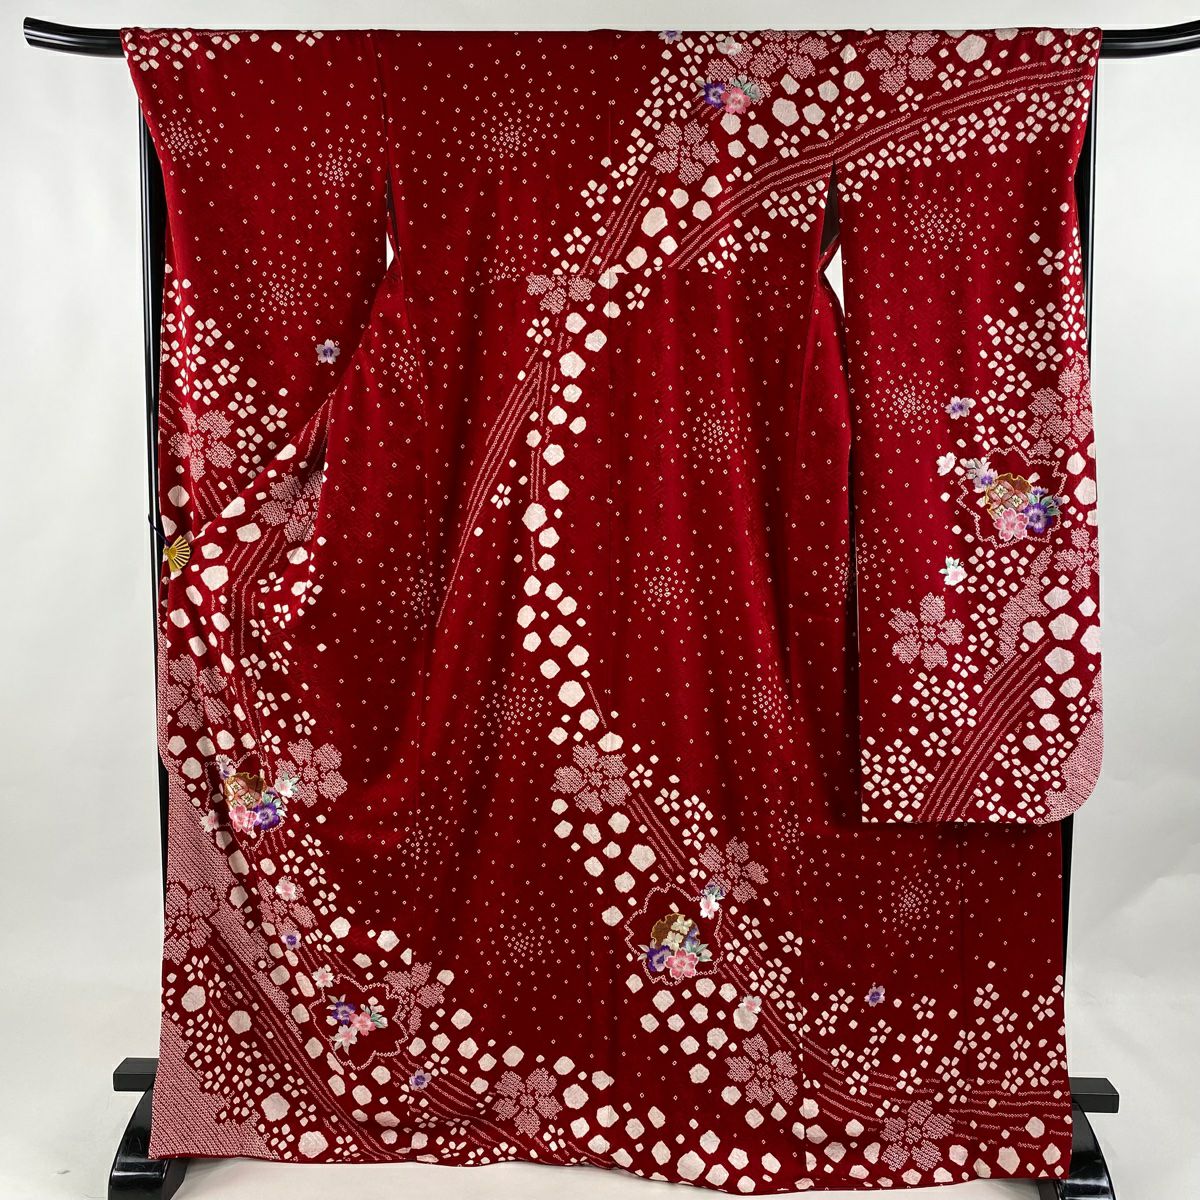 振袖 身丈169.5cm 裄丈68cm L 袷 雪輪 桜 刺繍 絞り 赤 正絹 美品 名品